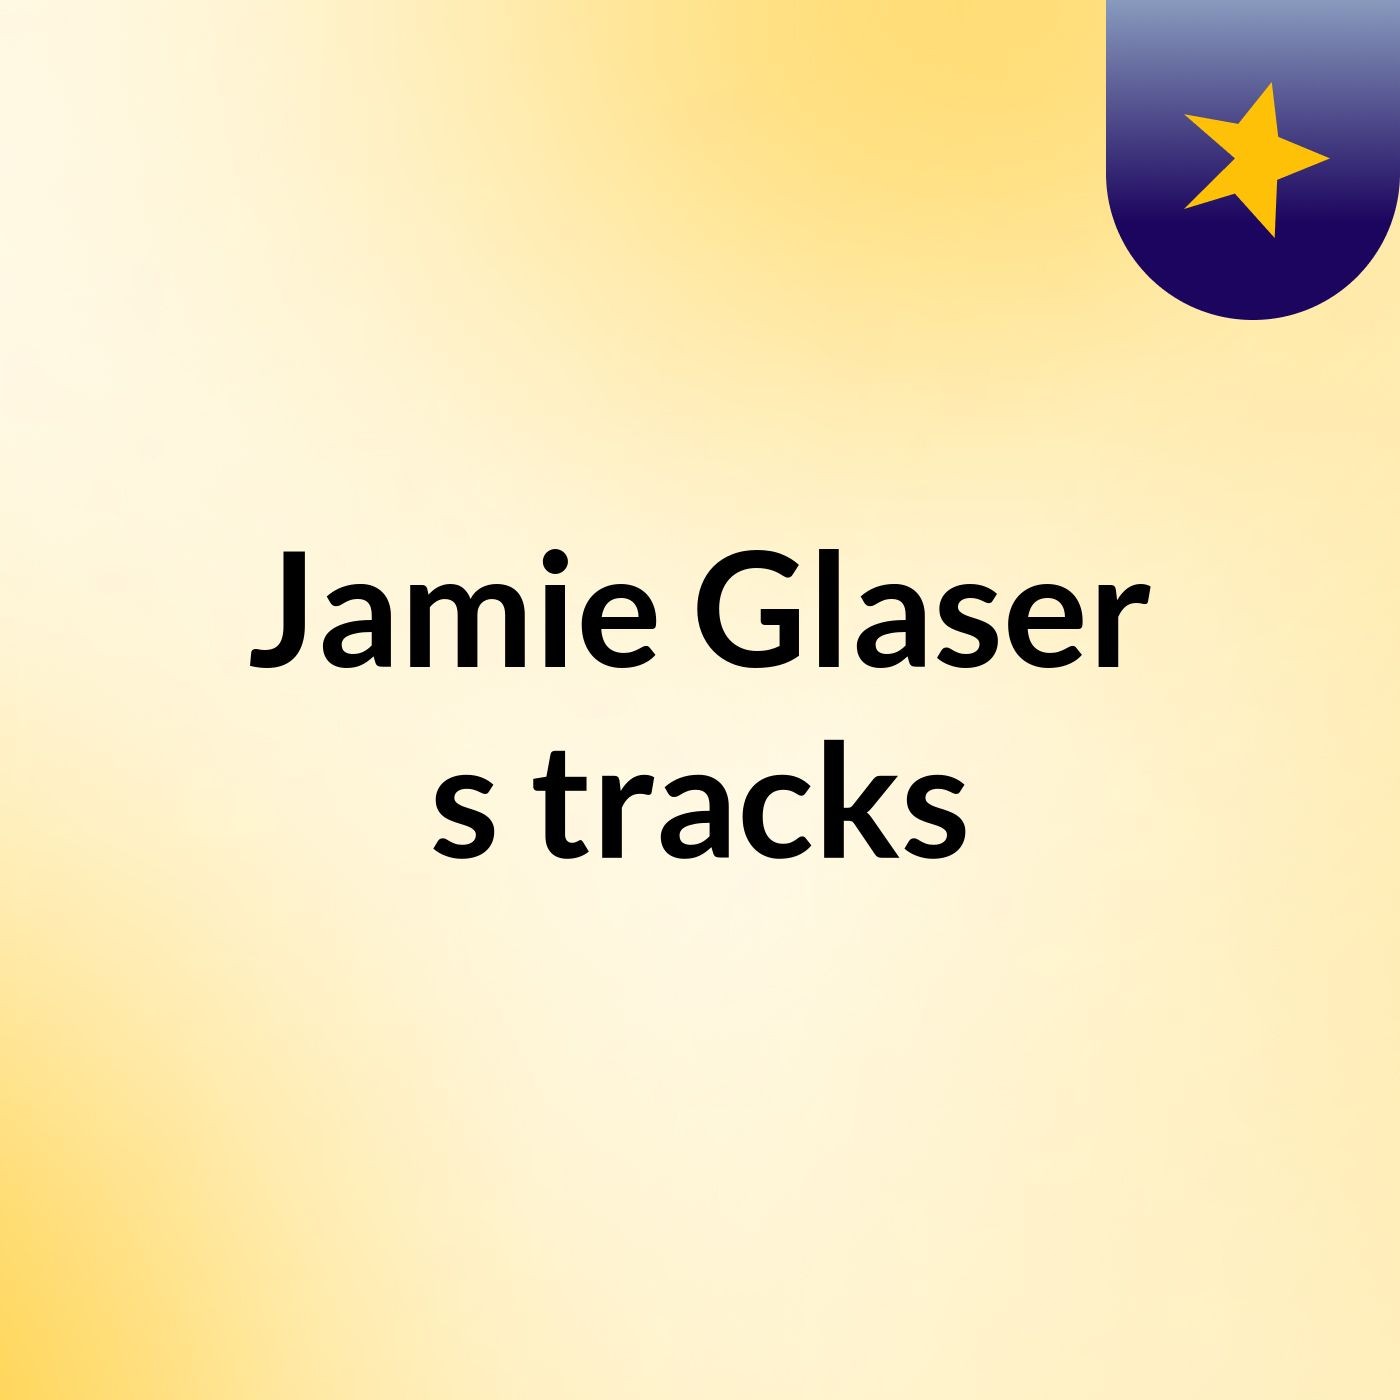 Jamie Glaser's tracks